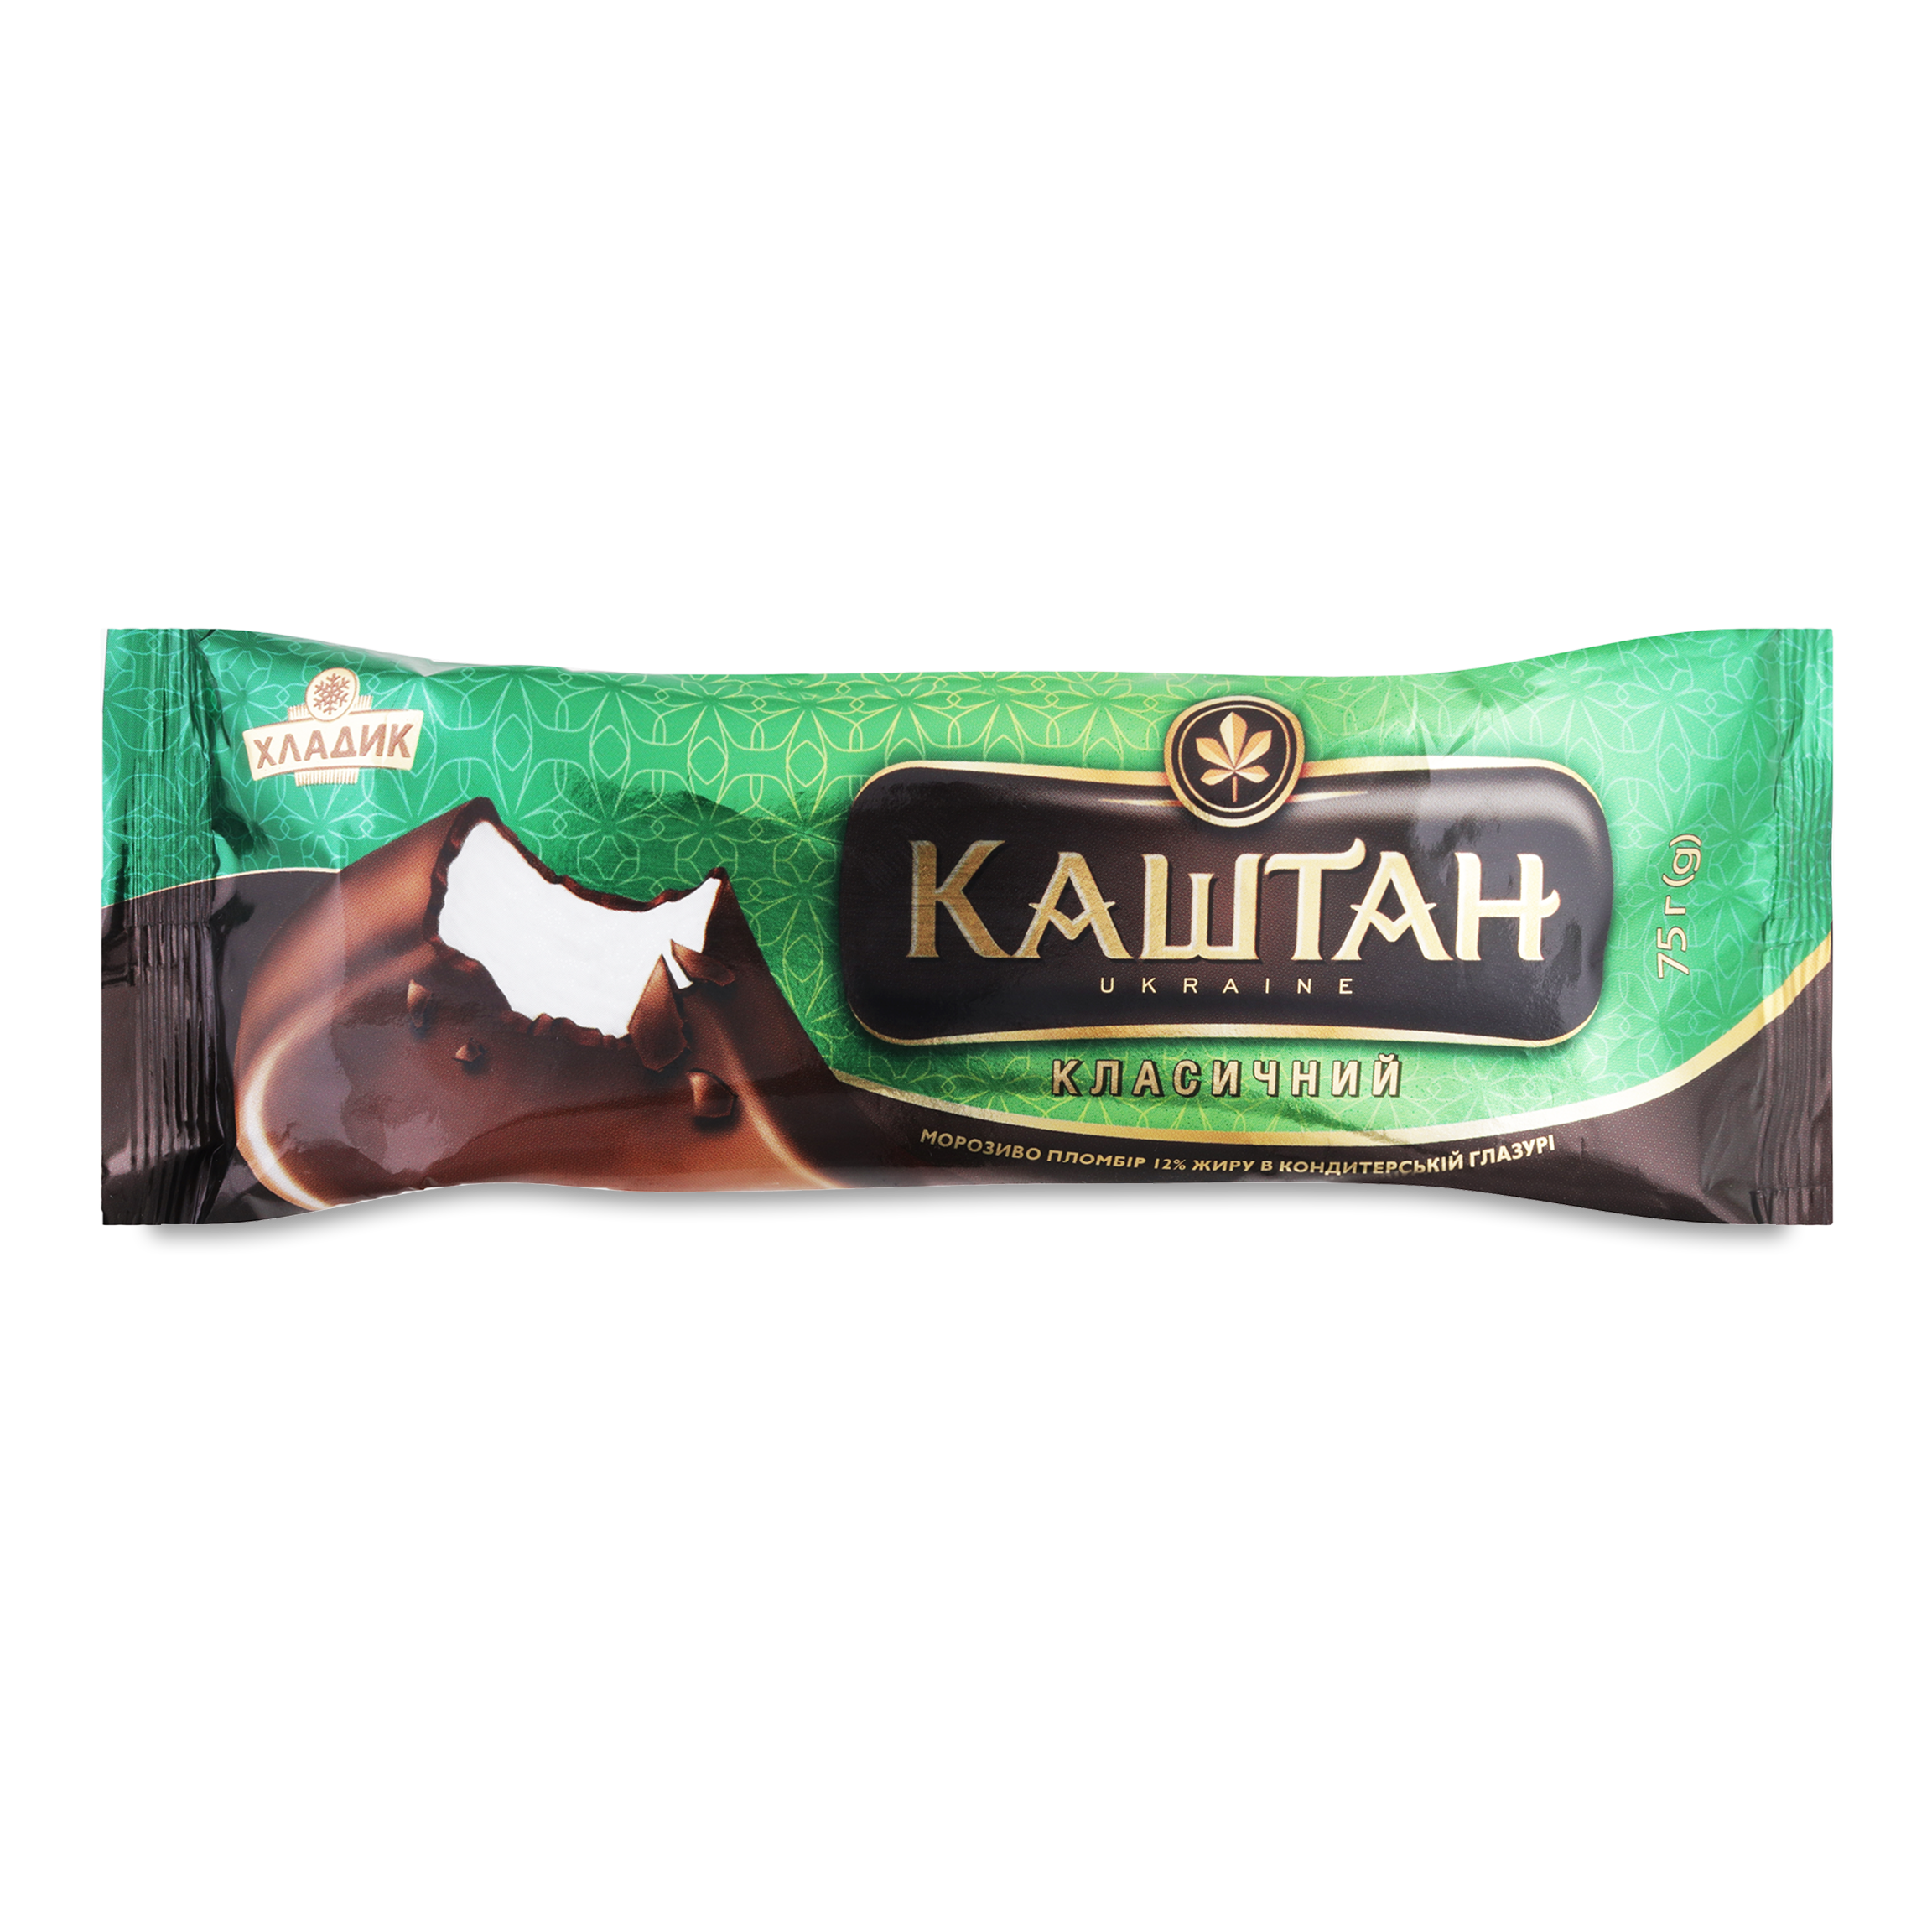 Мороженое Хладик Каштан классический пломбир в кондитерской глазури 75г 2